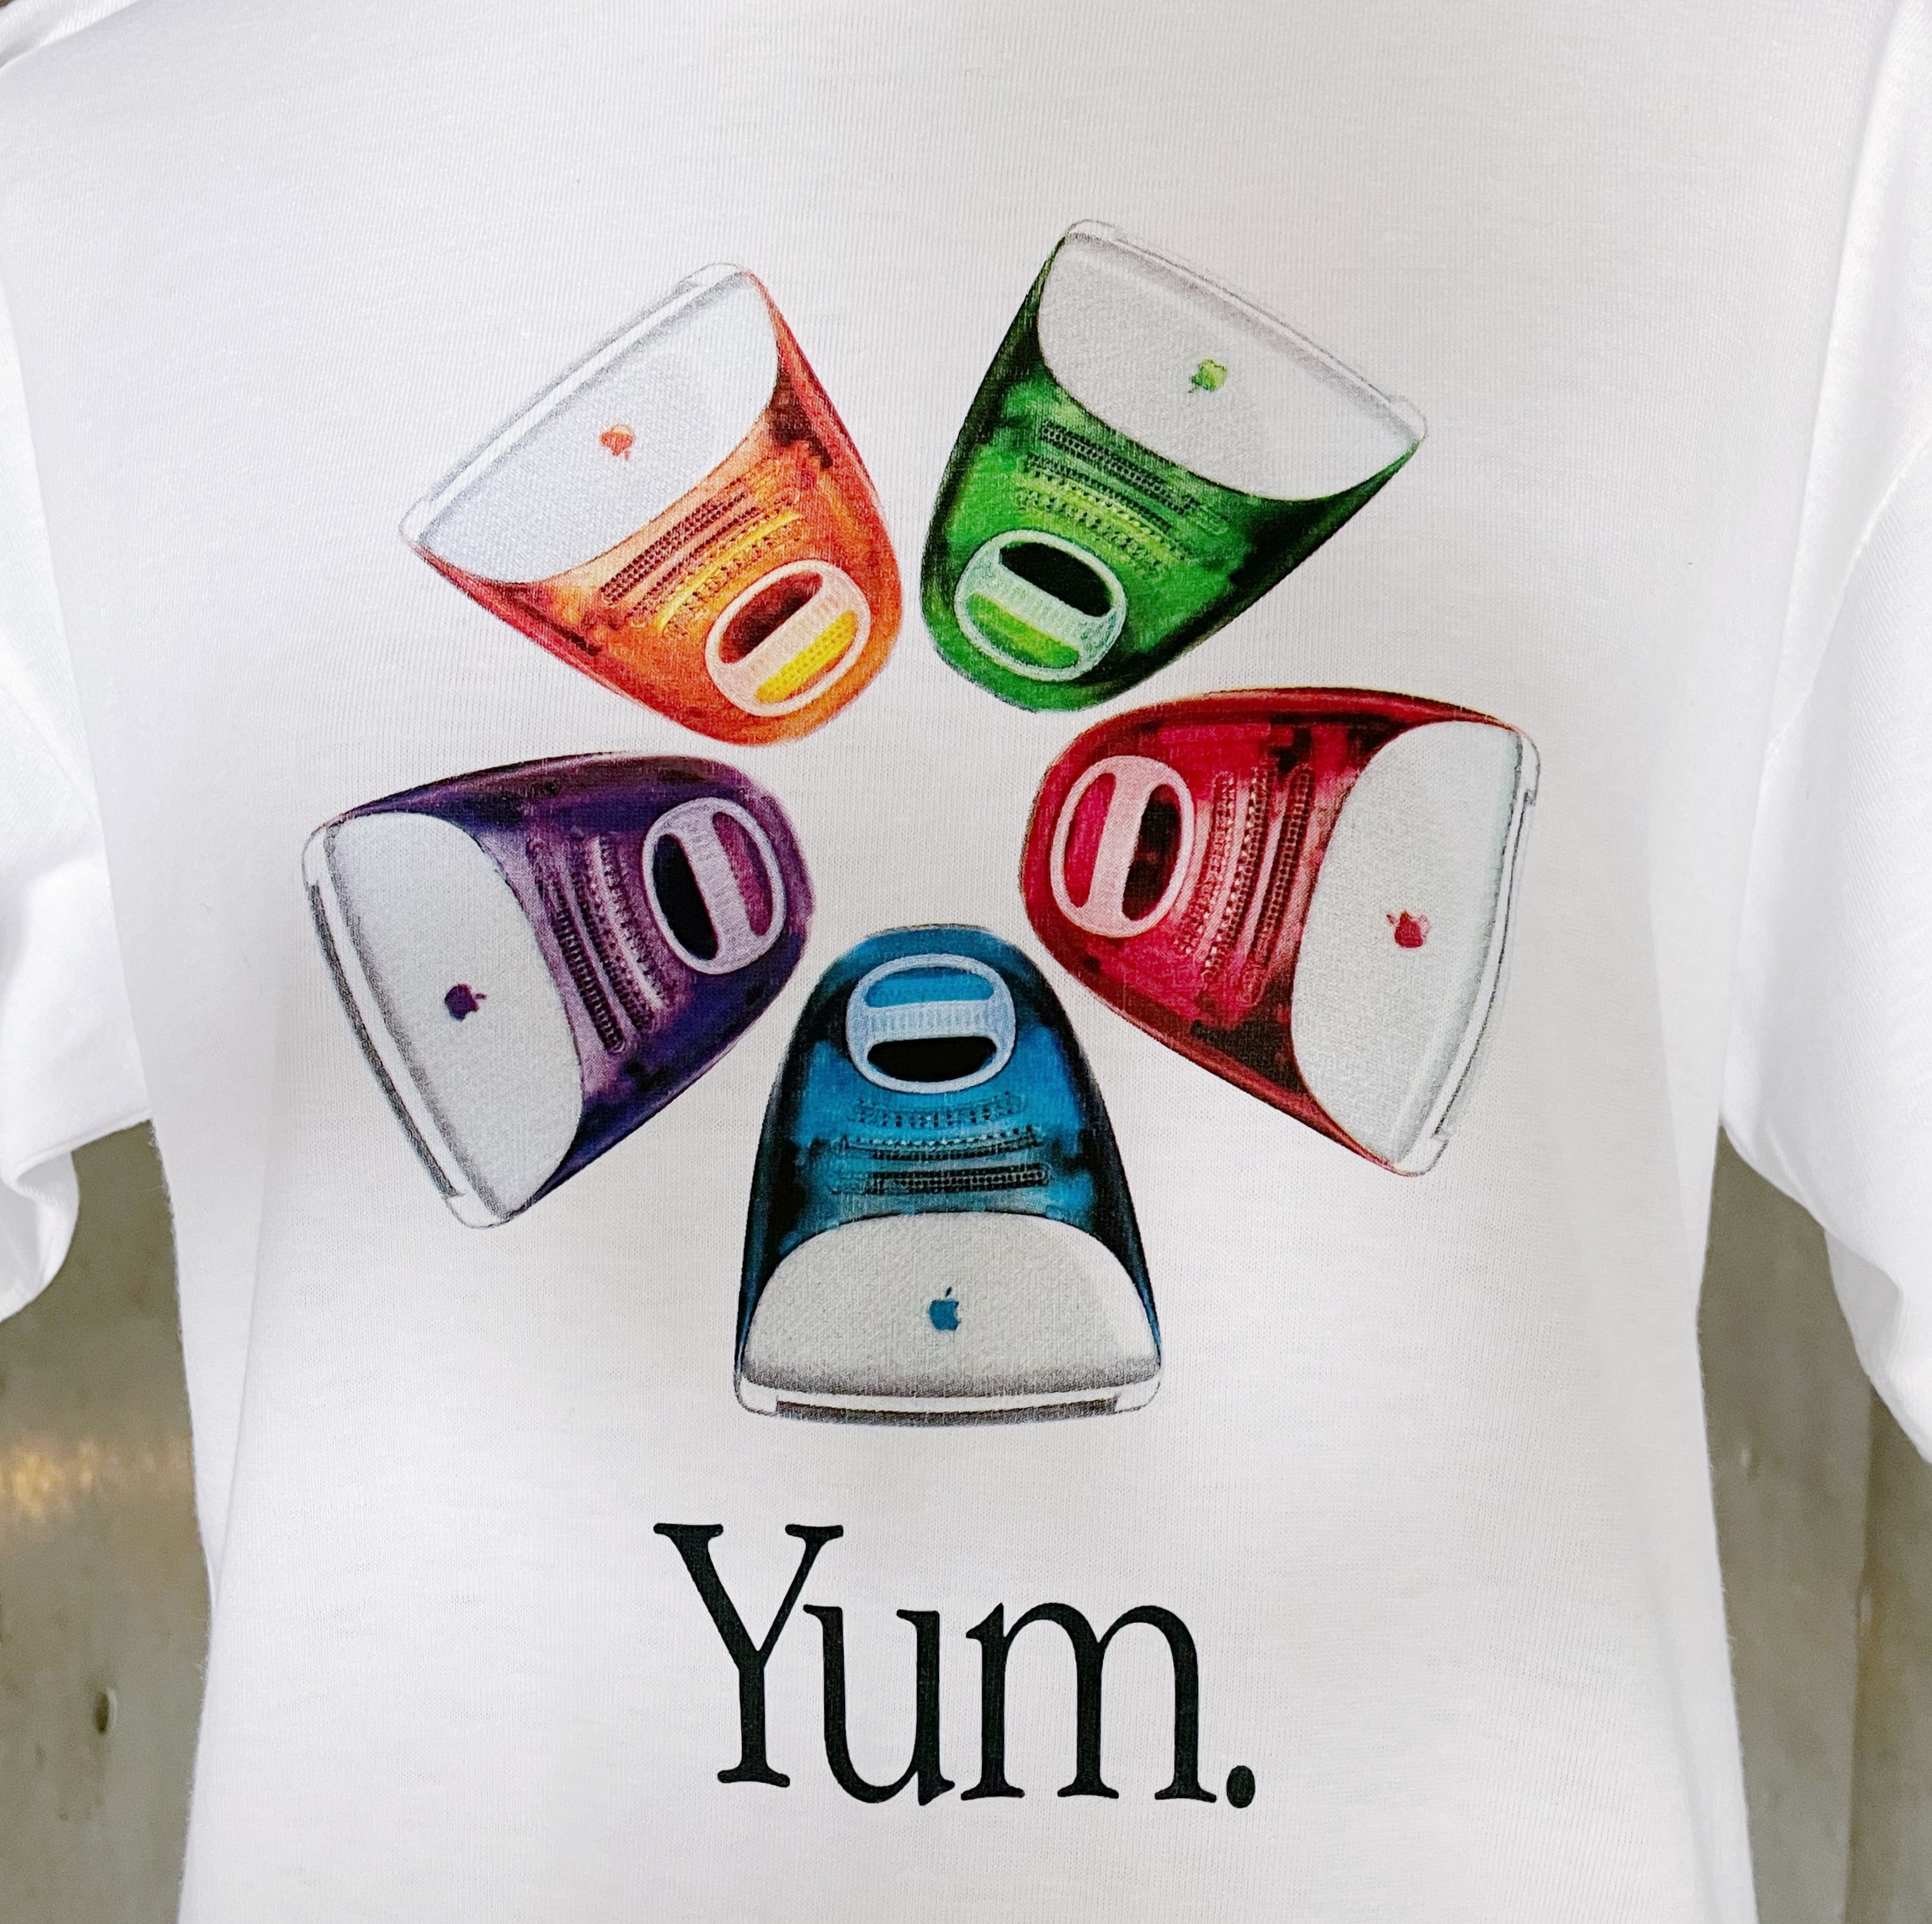 Apple iMac G3　Tシャツ・ぬいぐるみ・パンフレット・本体セット